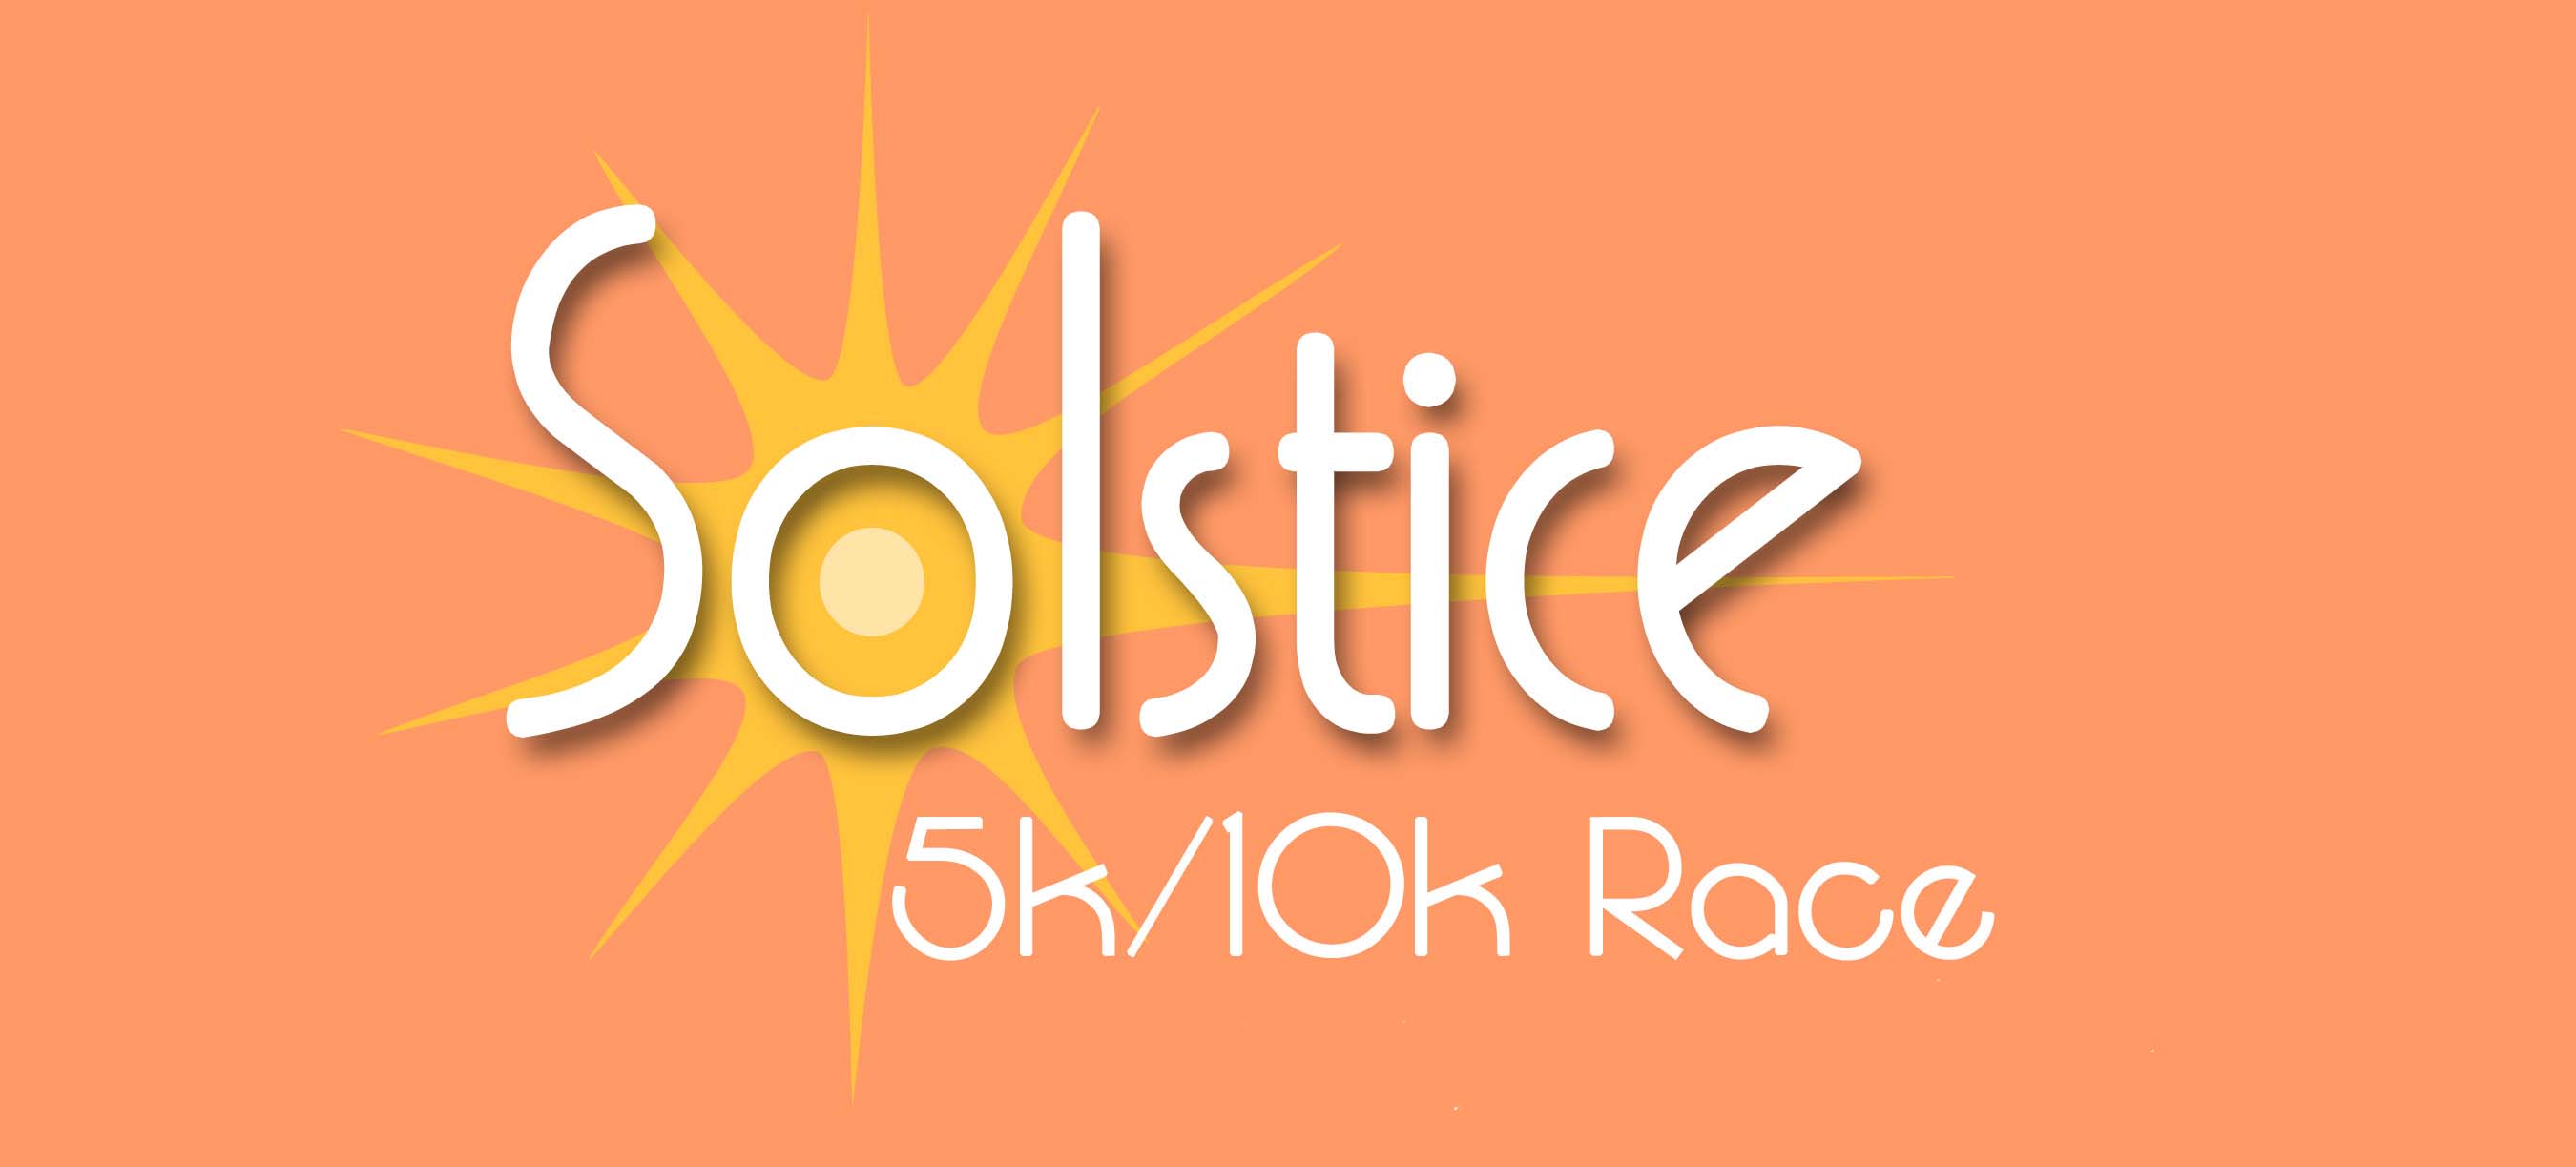 Register for 2017 Solstice 1 Mile